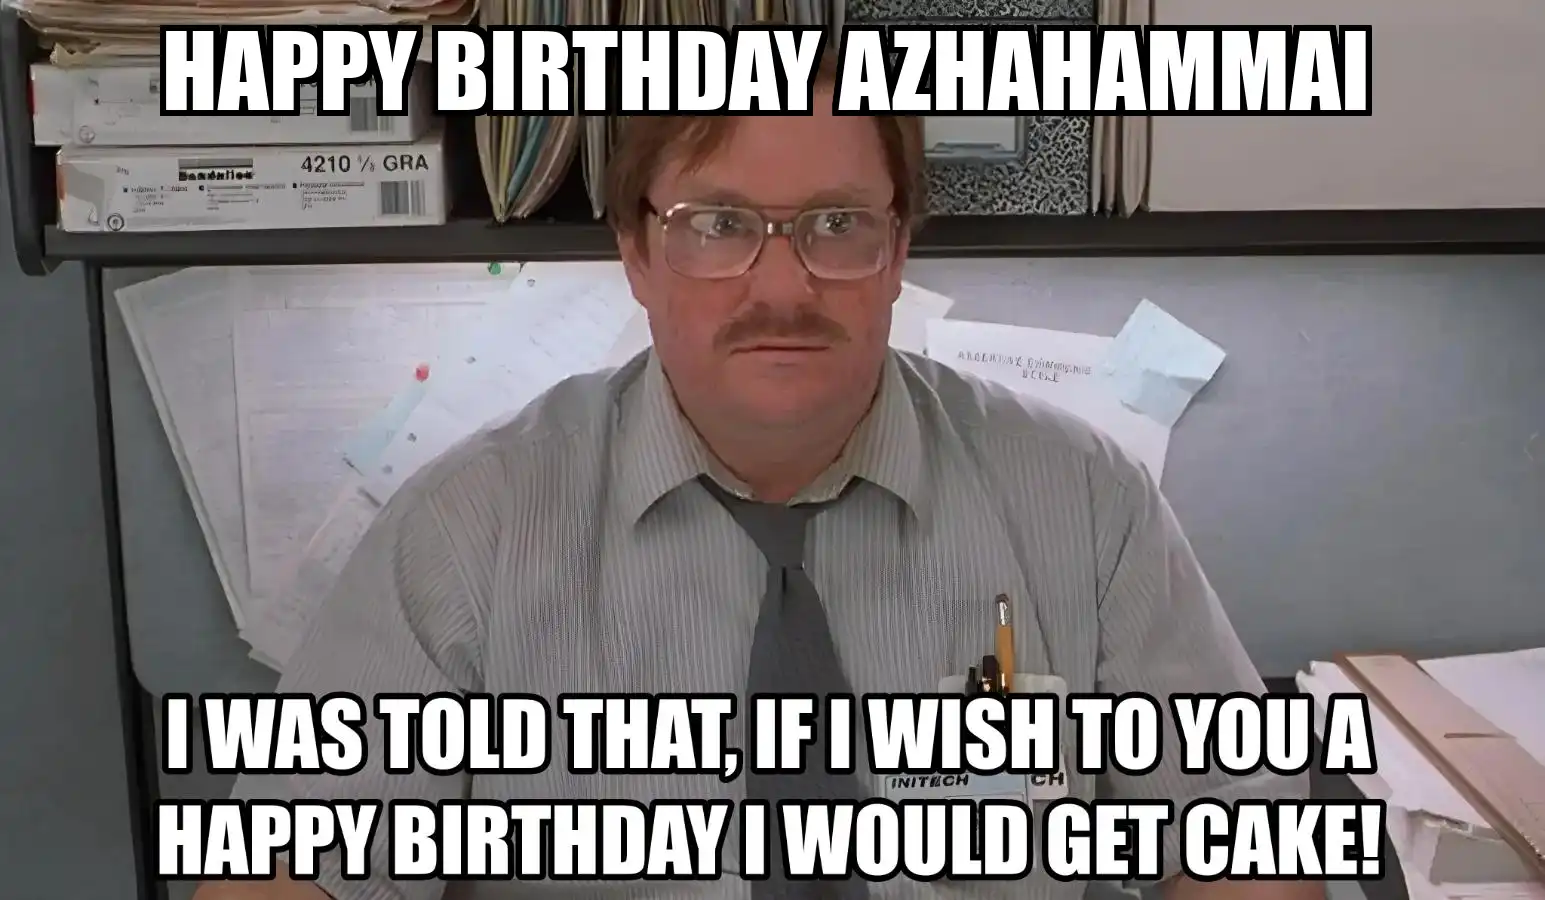 Happy Birthday Azhahammai I Would Get A Cake Meme